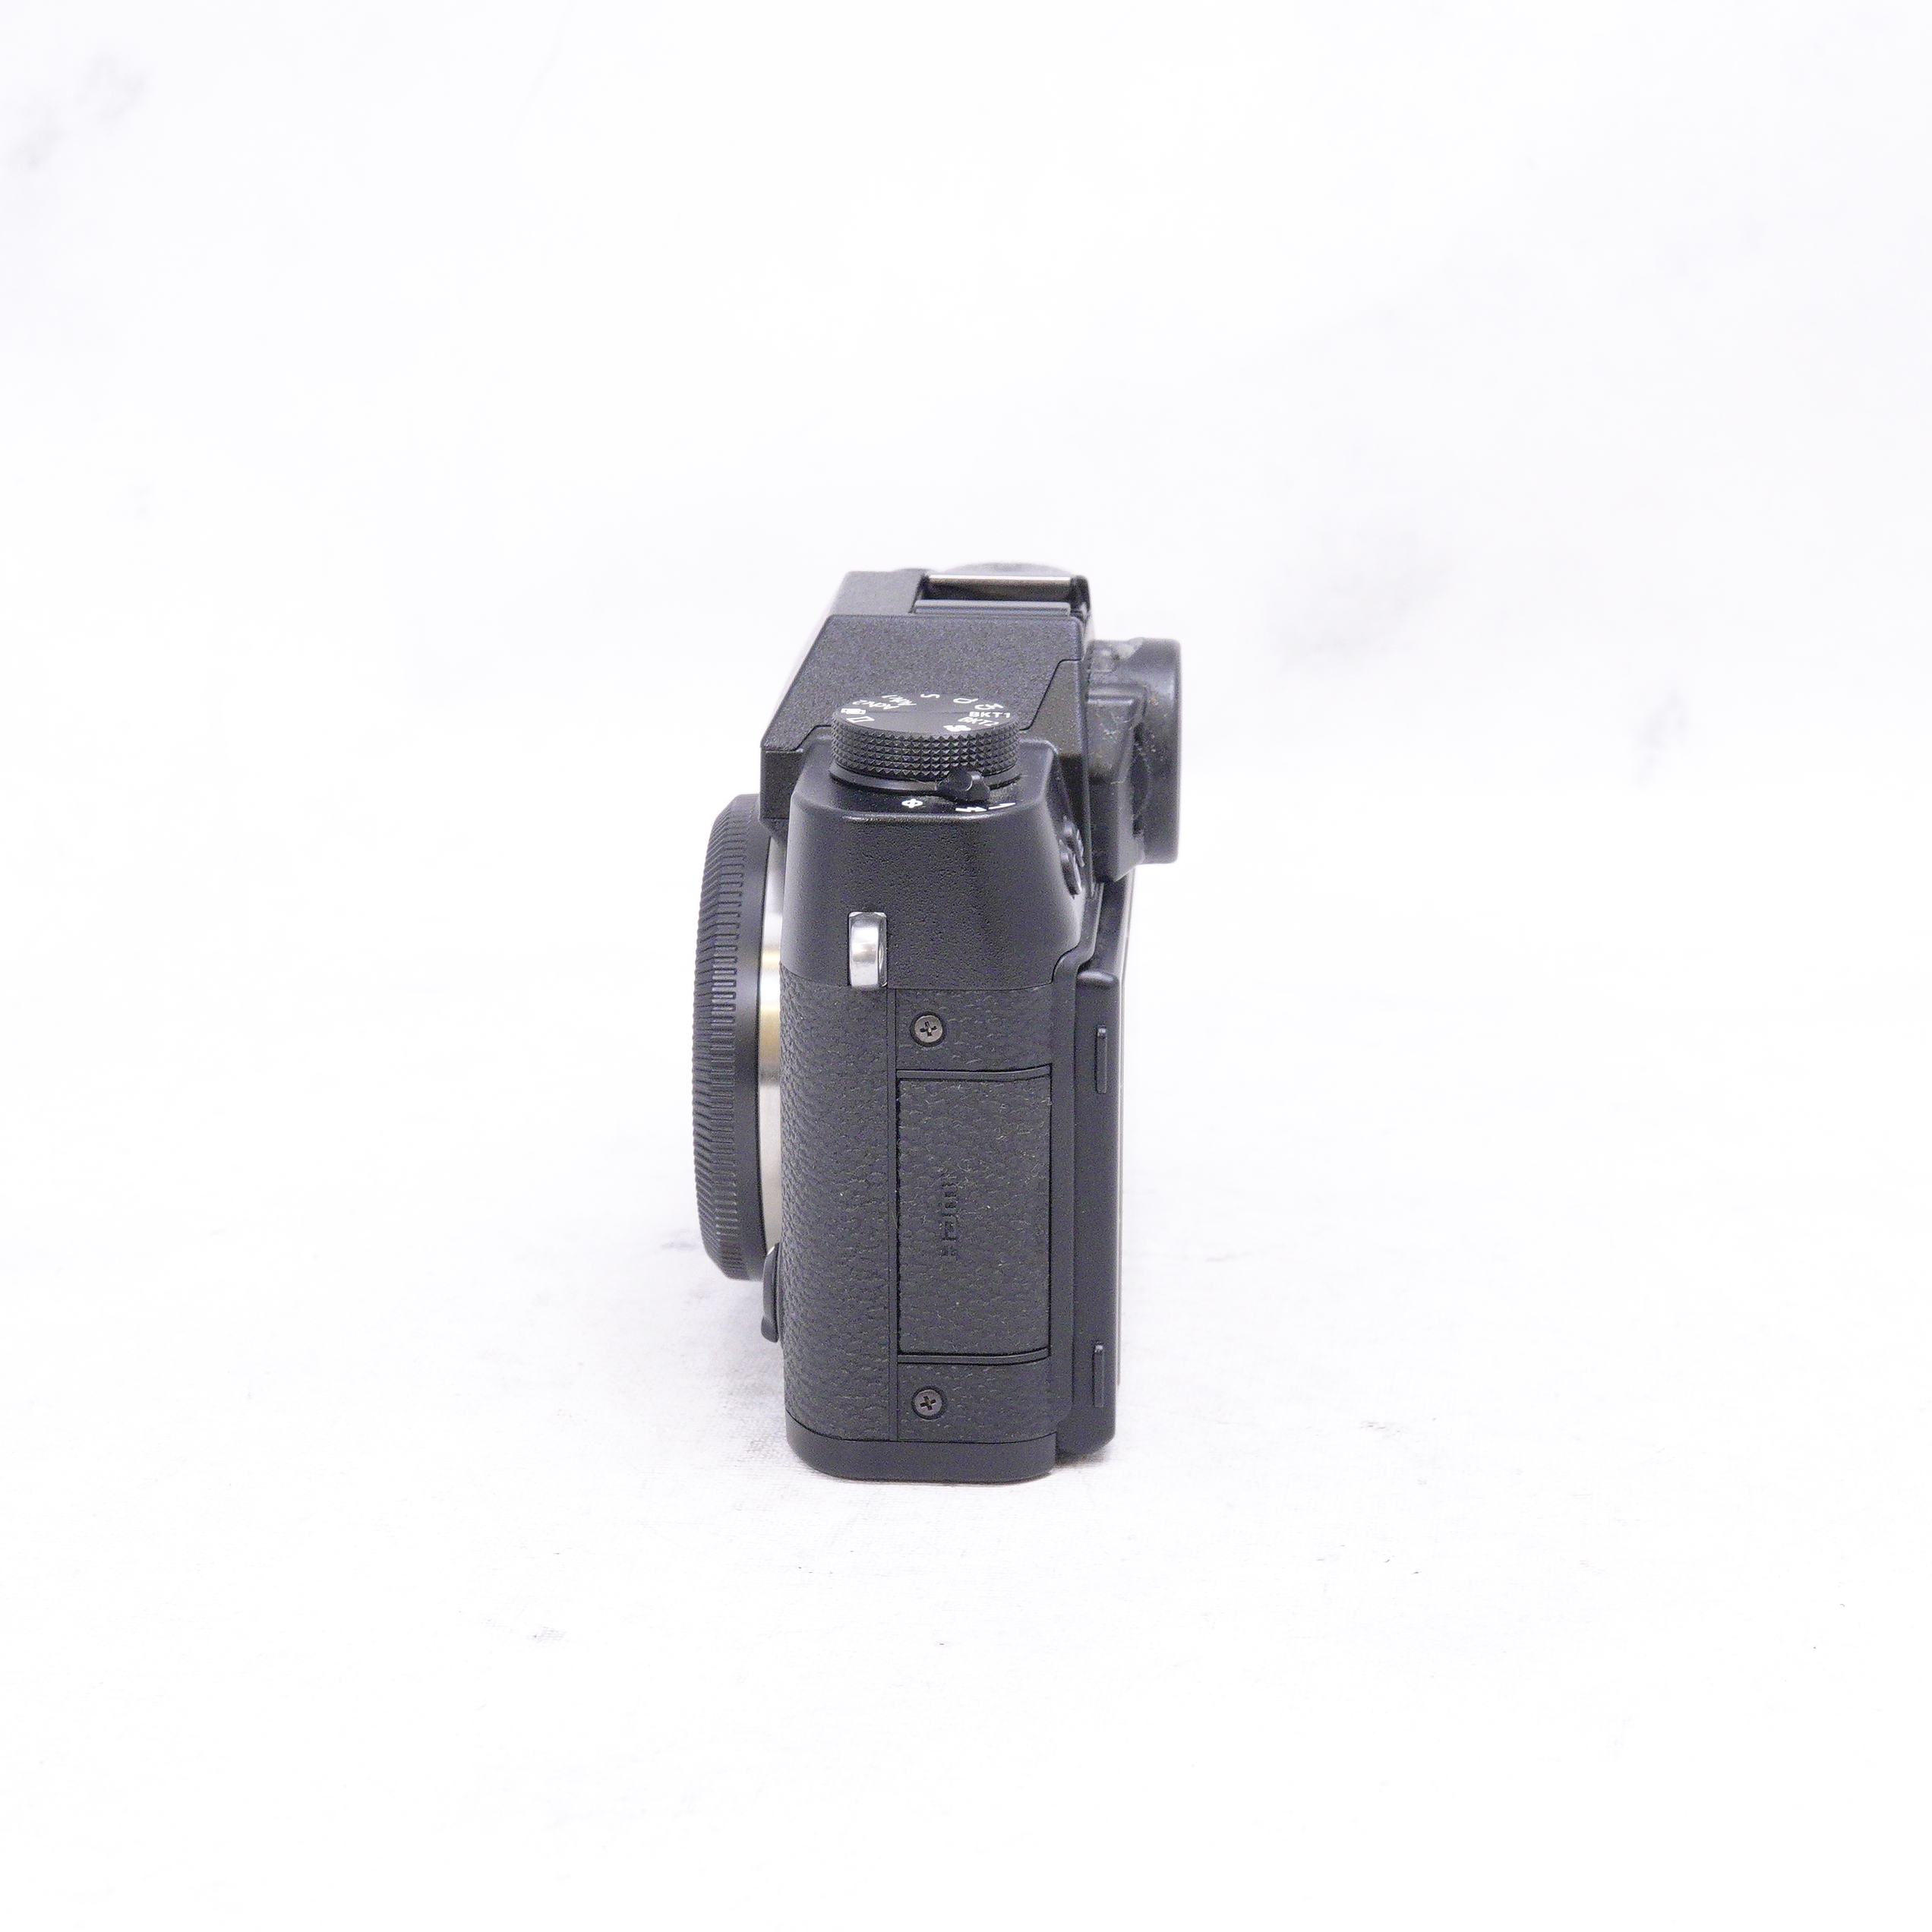 Fujifilm X-T20 + 18-55mm Kit - Usado